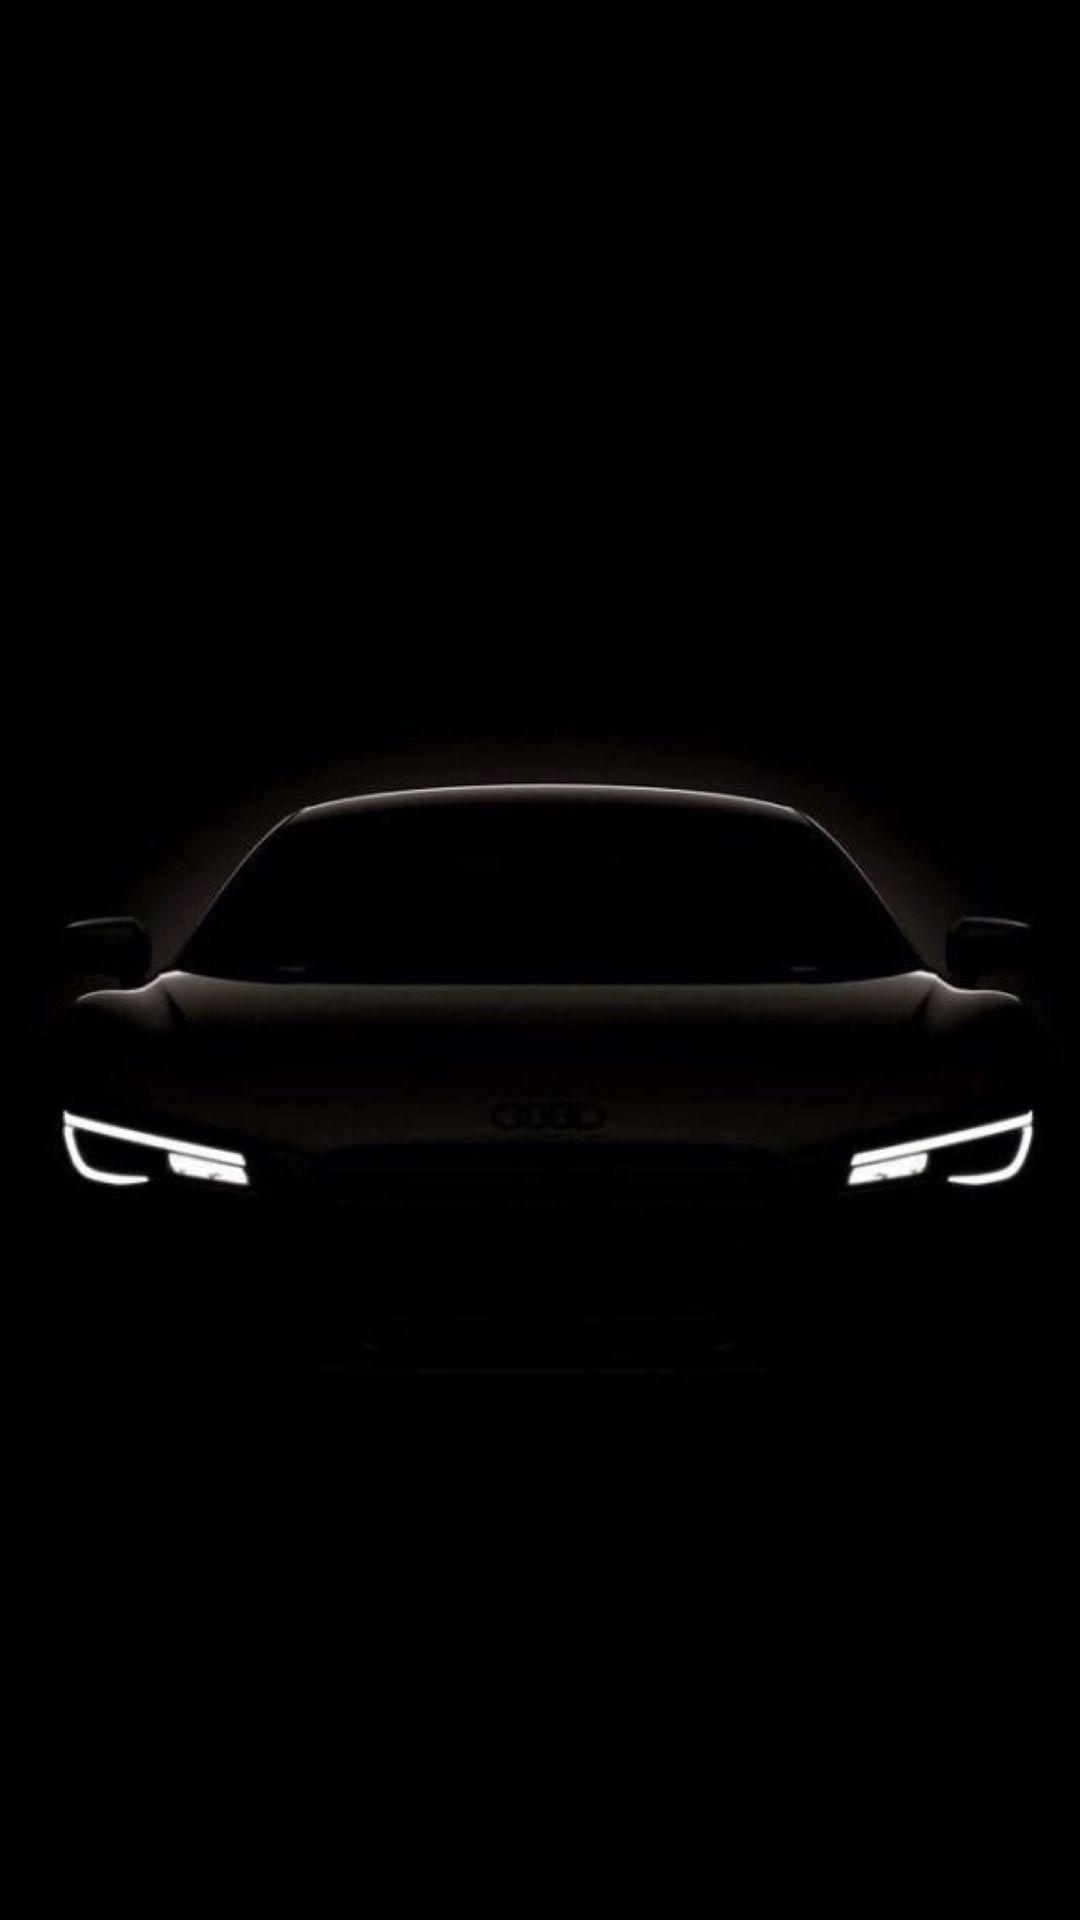 Dark Shiny Concept Car iPhone 8 Wallpaper. Black